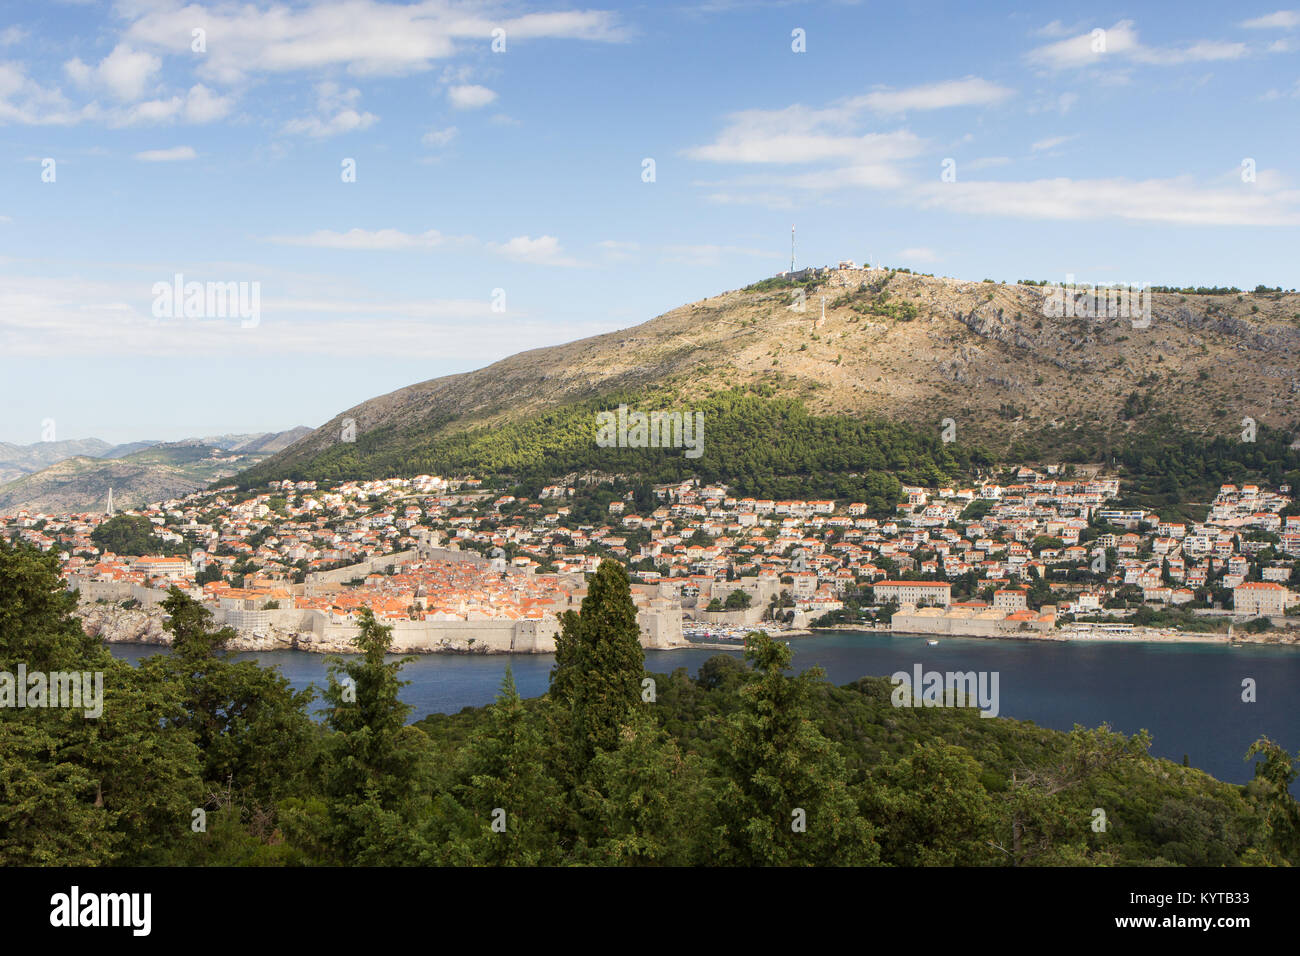 Bâtiments sur la colline et le mont Srd à Dubrovnik, Croatie, vu de la luxuriante île de Lokrum lors d'une journée ensoleillée. Copier l'espace. Banque D'Images